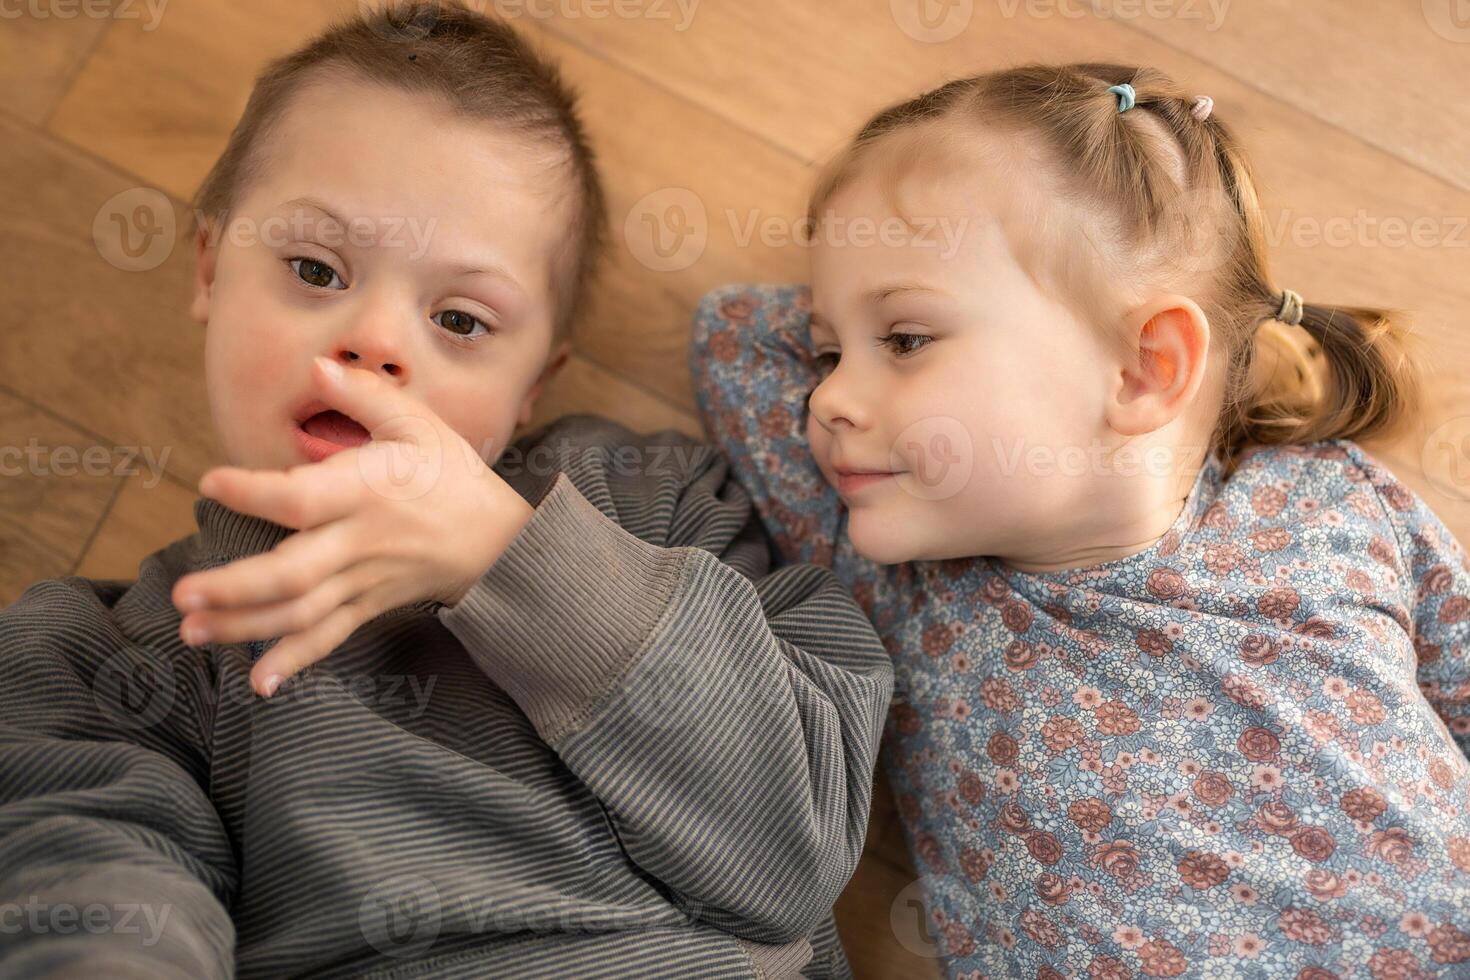 petit garçon avec vers le bas syndrome pièces avec le sien plus jeune sœur dans Accueil chambre à coucher. haute qualité photo